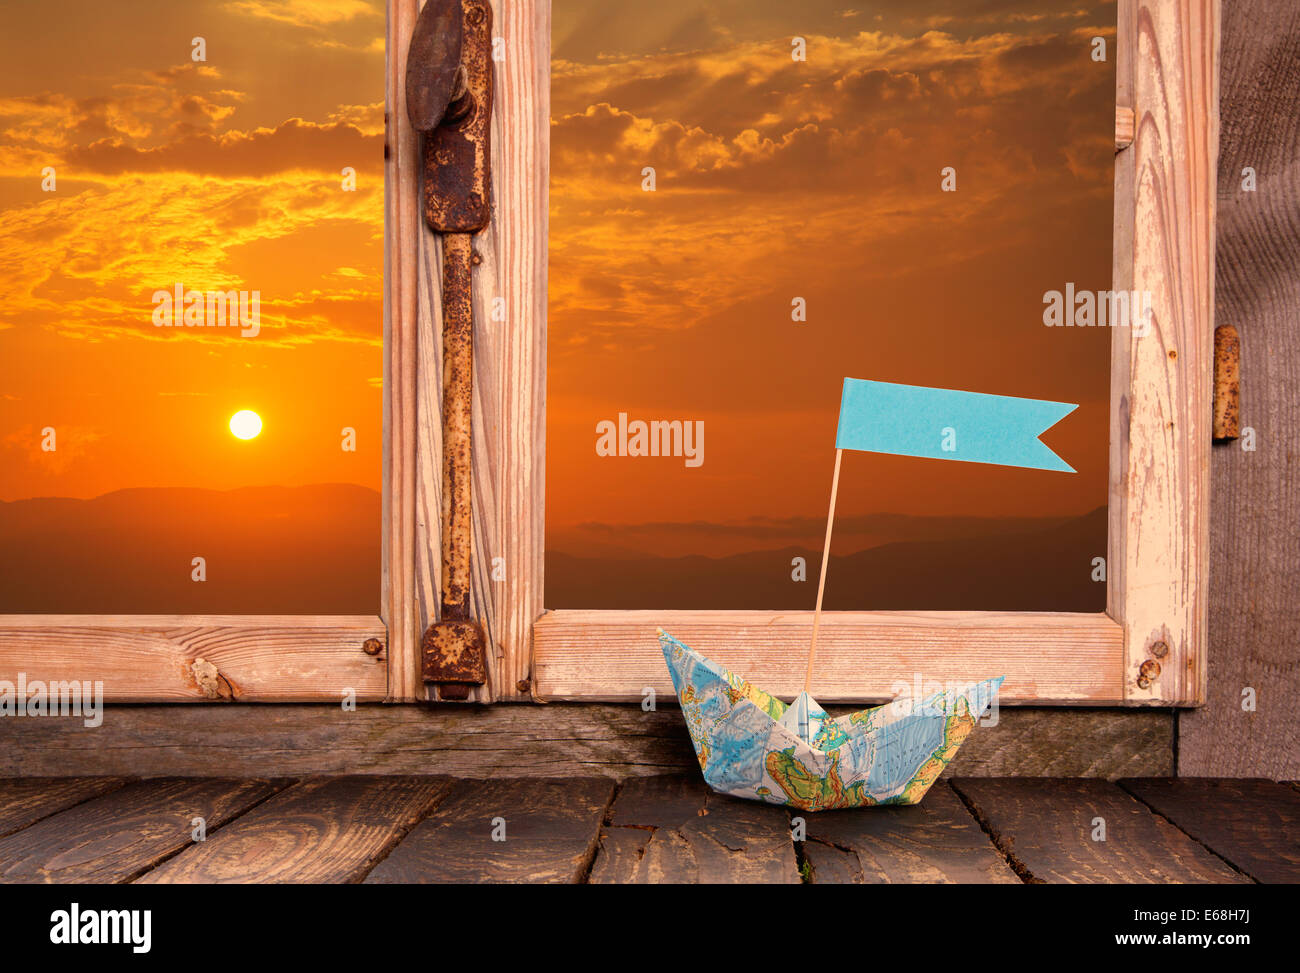 Sogni di vacanza: di legno lo sfondo della finestra con vista al tramonto decorata con una imbarcazione a vela sul davanzale. Foto Stock